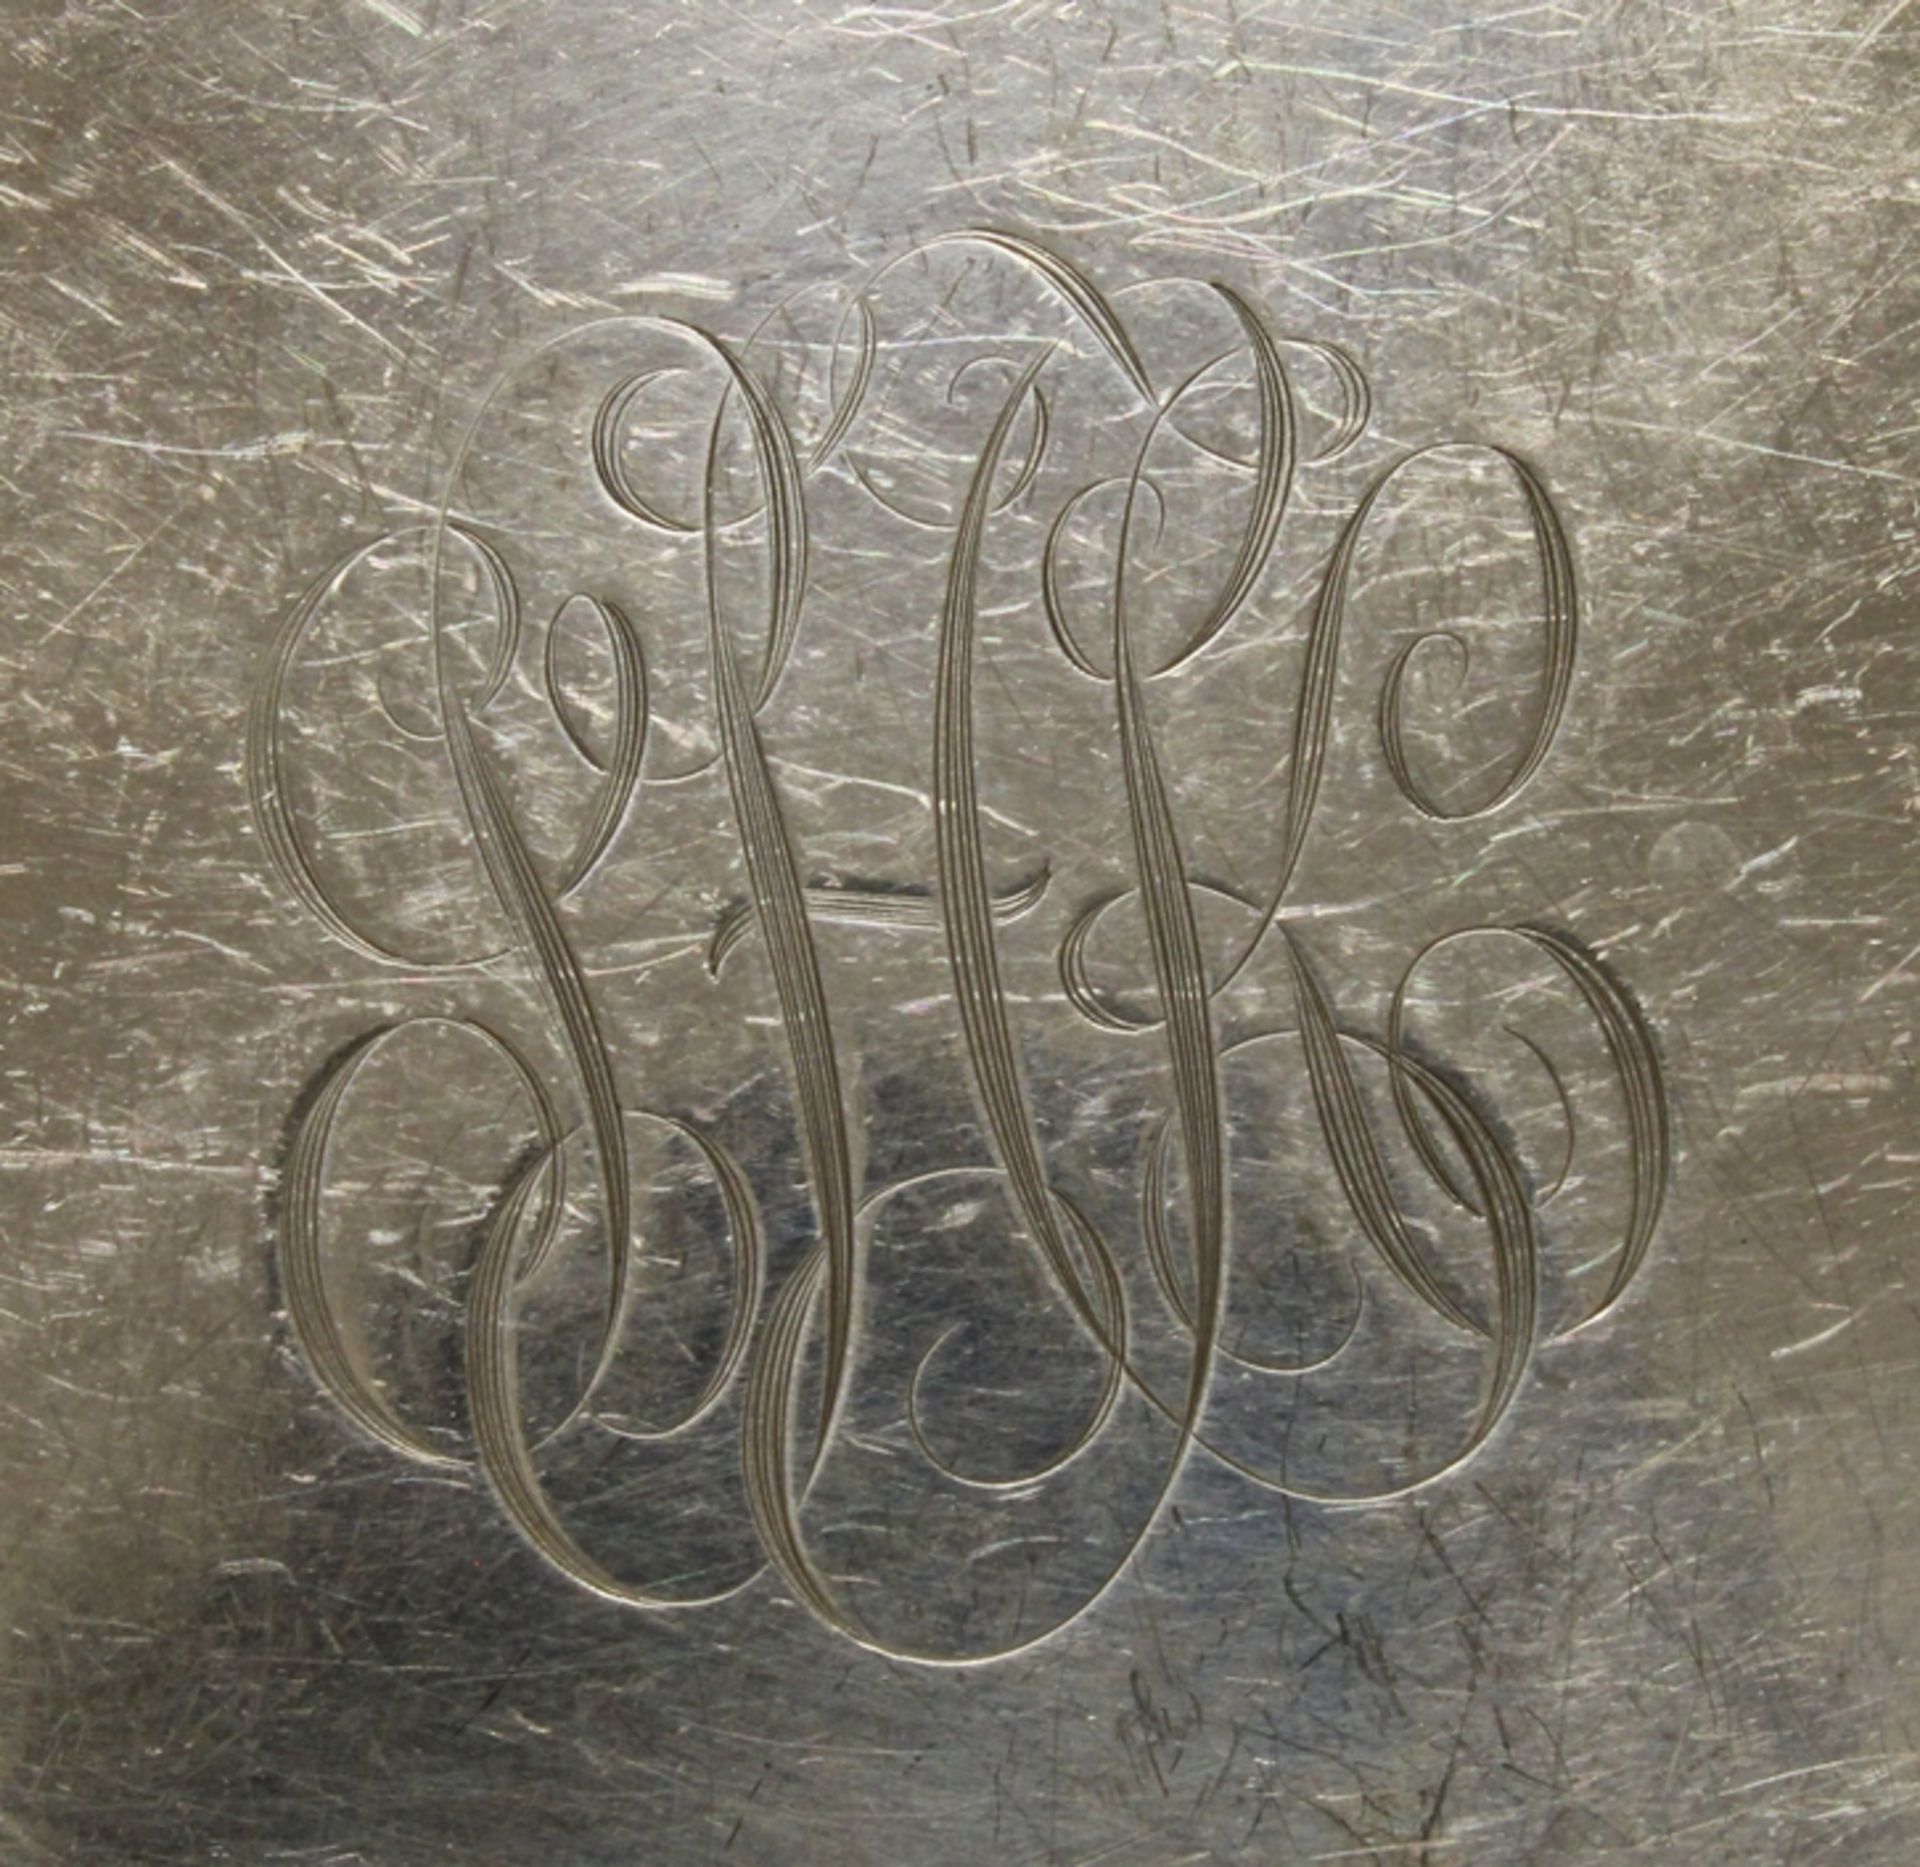 12 Teller, Silber 925, Gorham, Perlrand, Spiegel je graviert mit ligiertem Monogramm, ø 15.2 cm, zu - Bild 2 aus 3